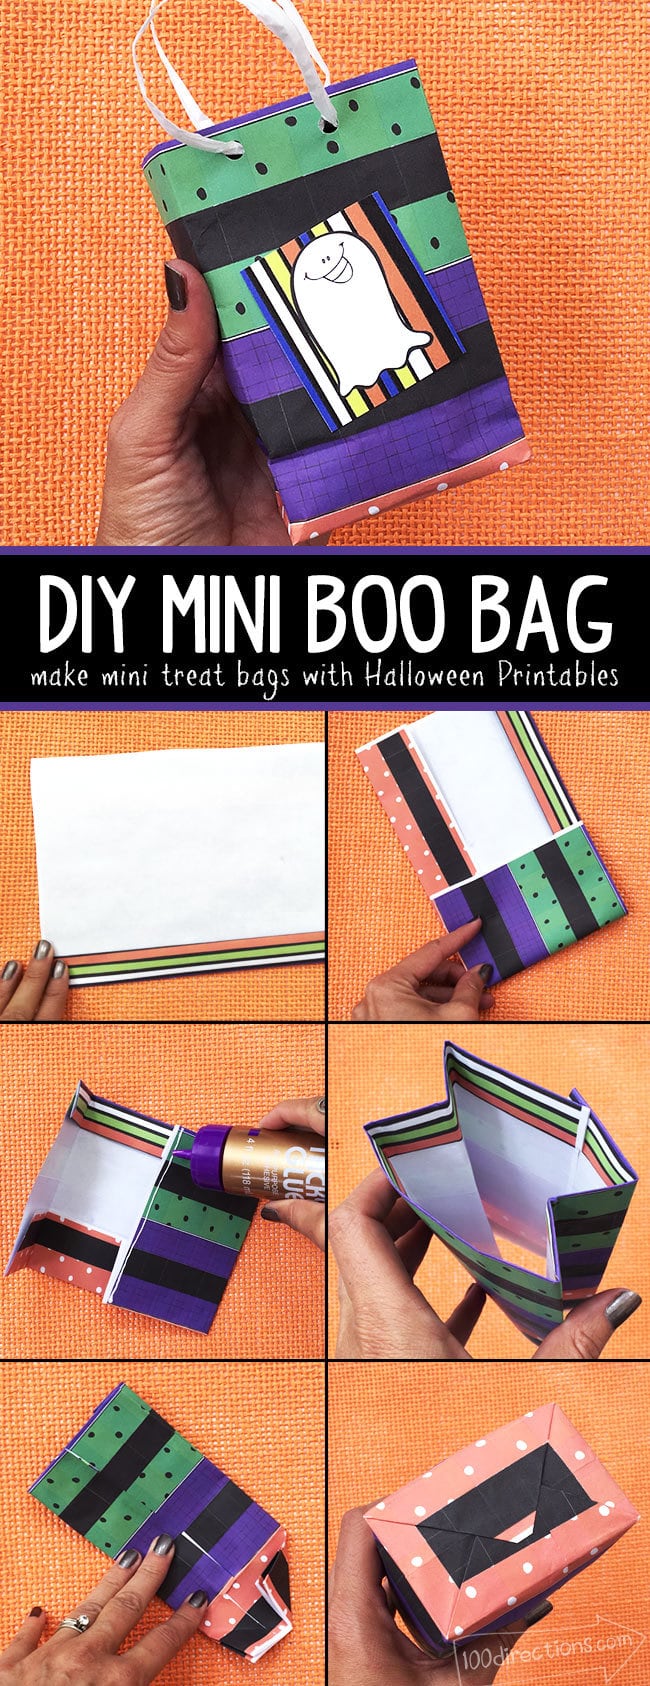 DIY Mini Boo Bag using Halloween Printables